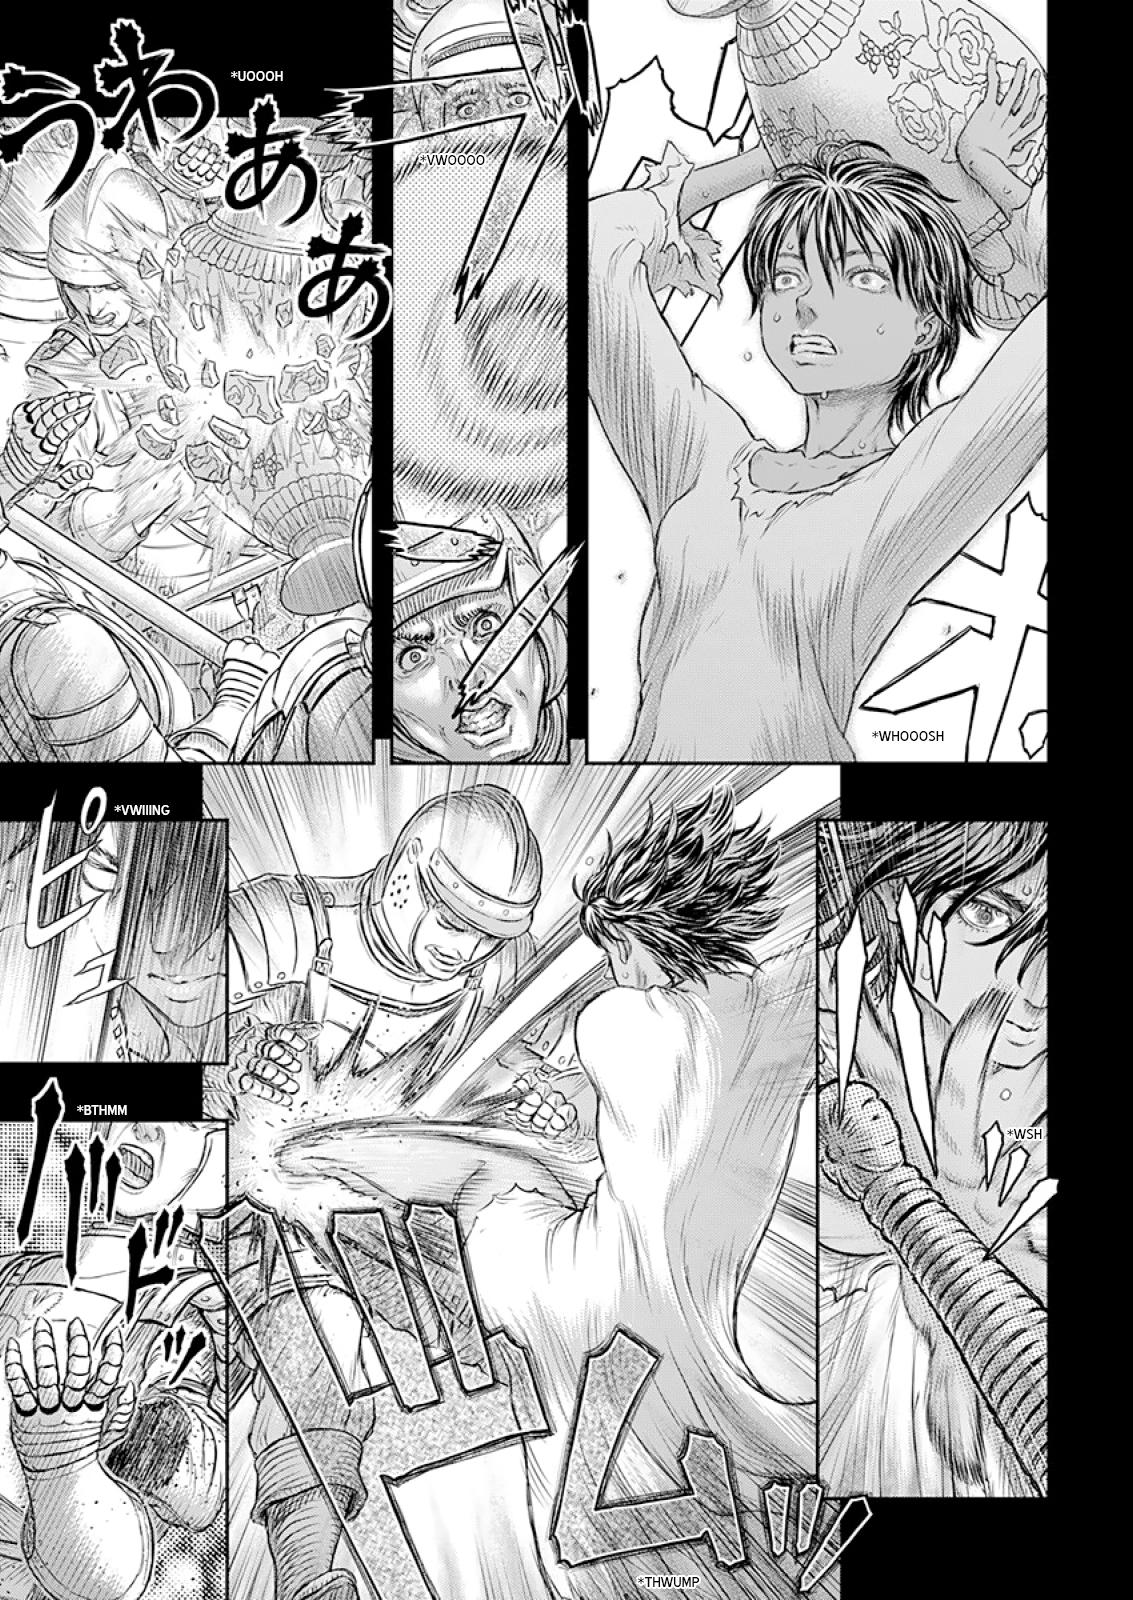 Berserk Manga Chapter 372 image 16